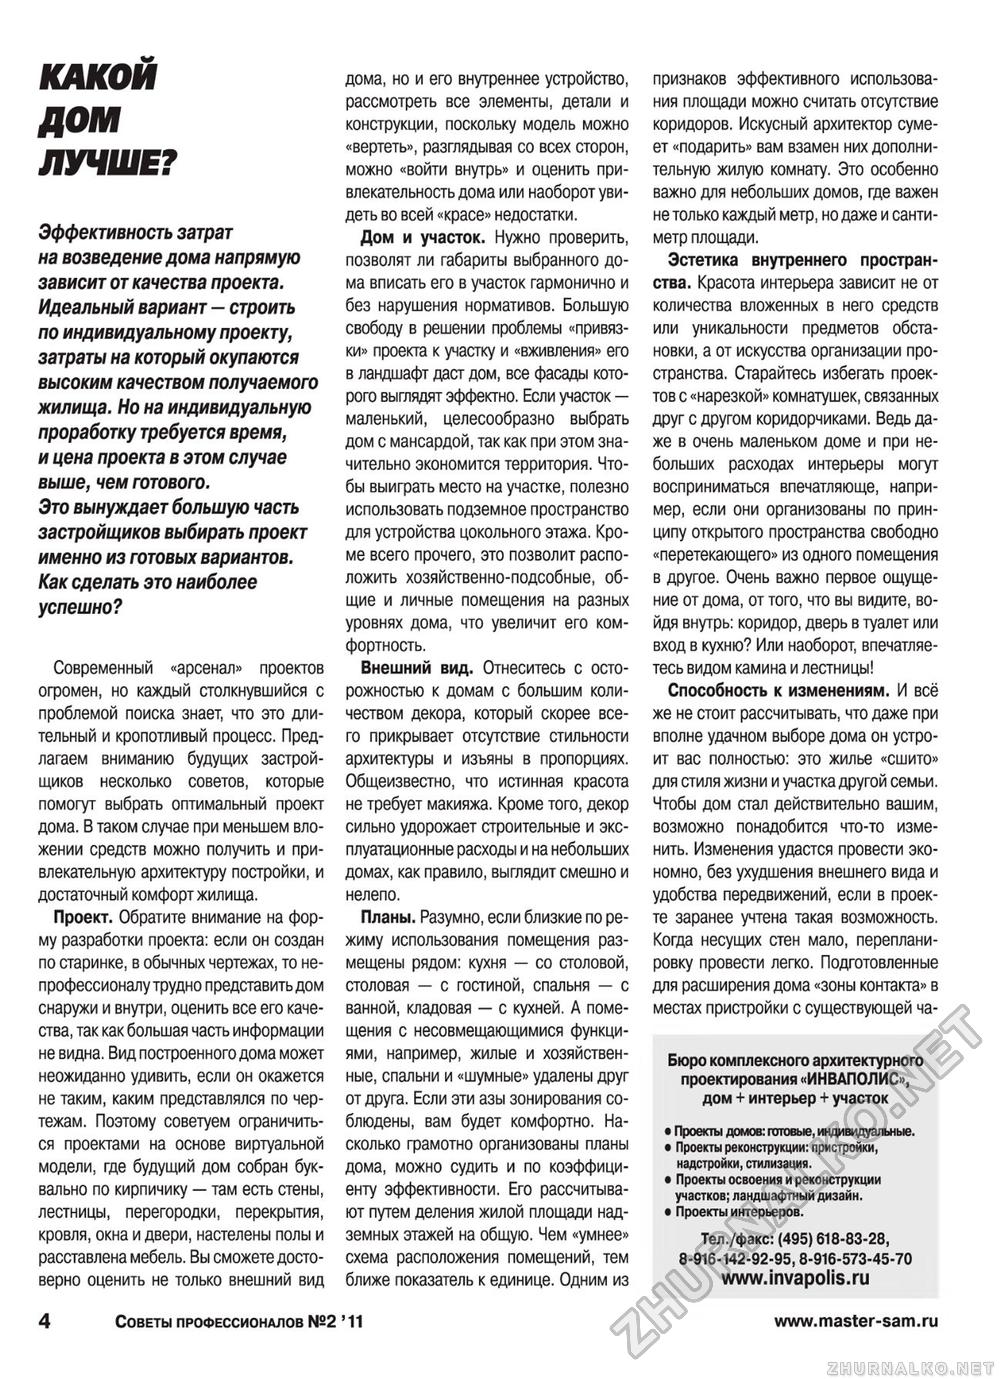 Советы профессионалов 2011-02, страница 4